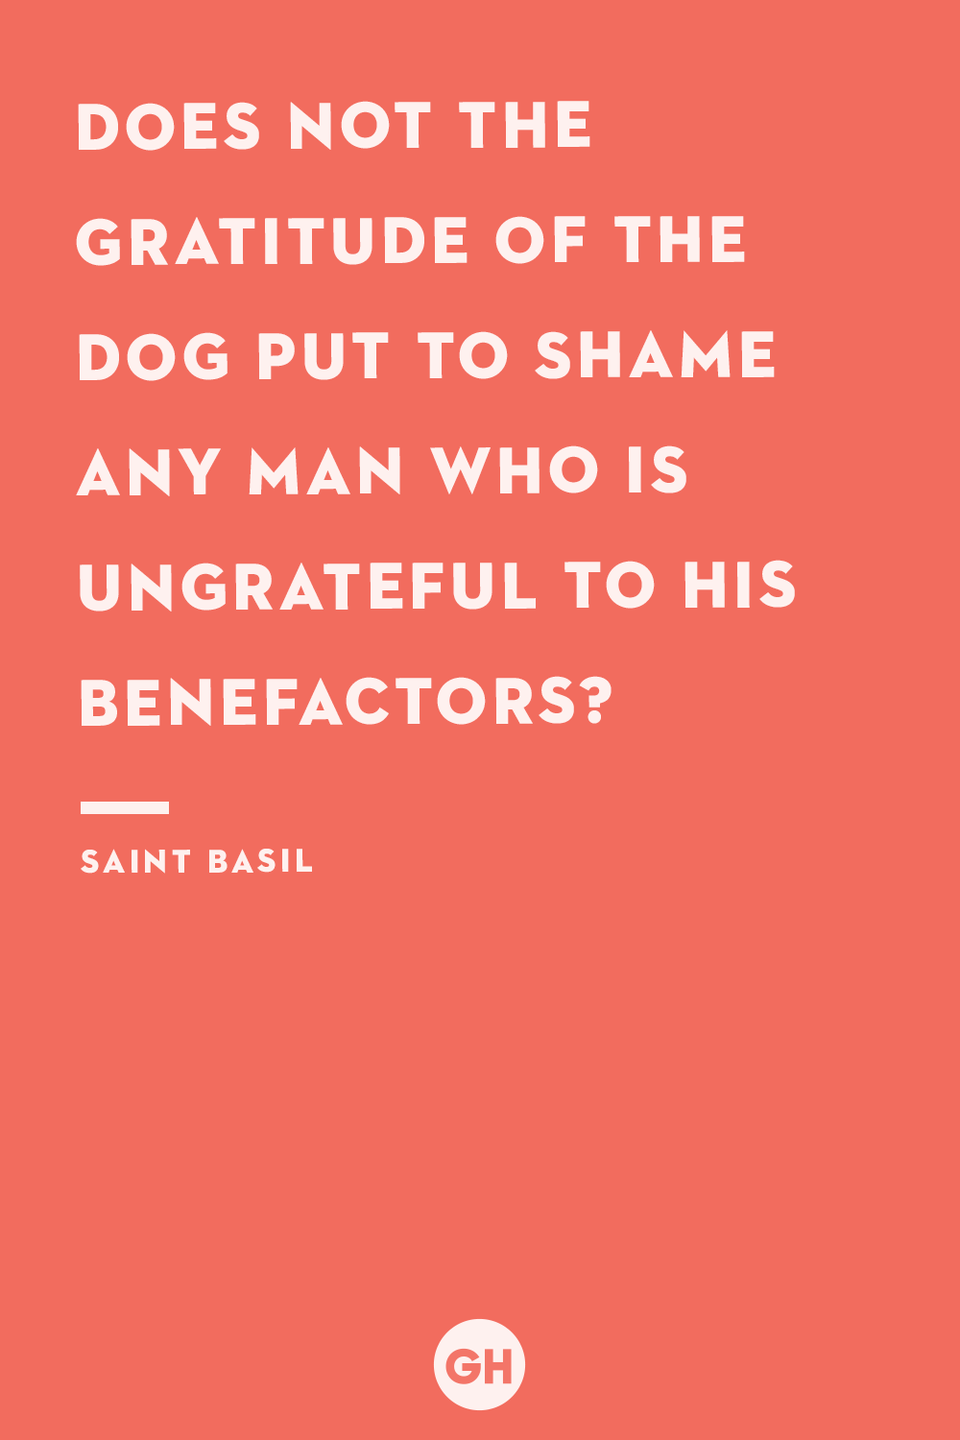 Saint Basil